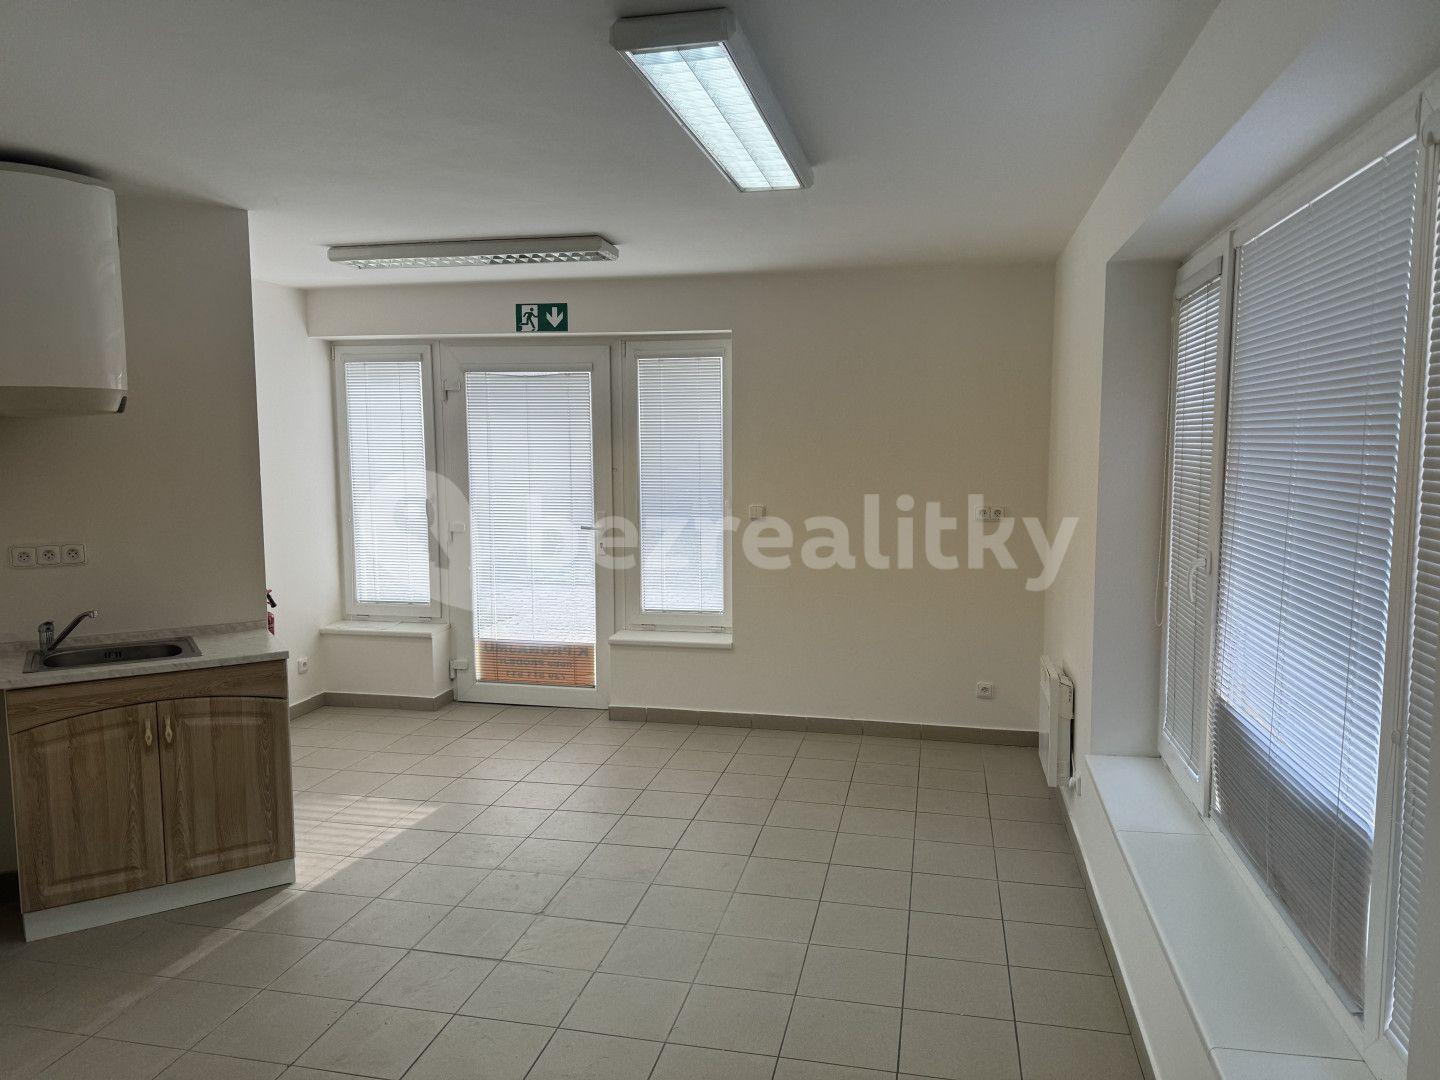 non-residential property for sale, 920 m², Volmanova, Čelákovice, Středočeský Region